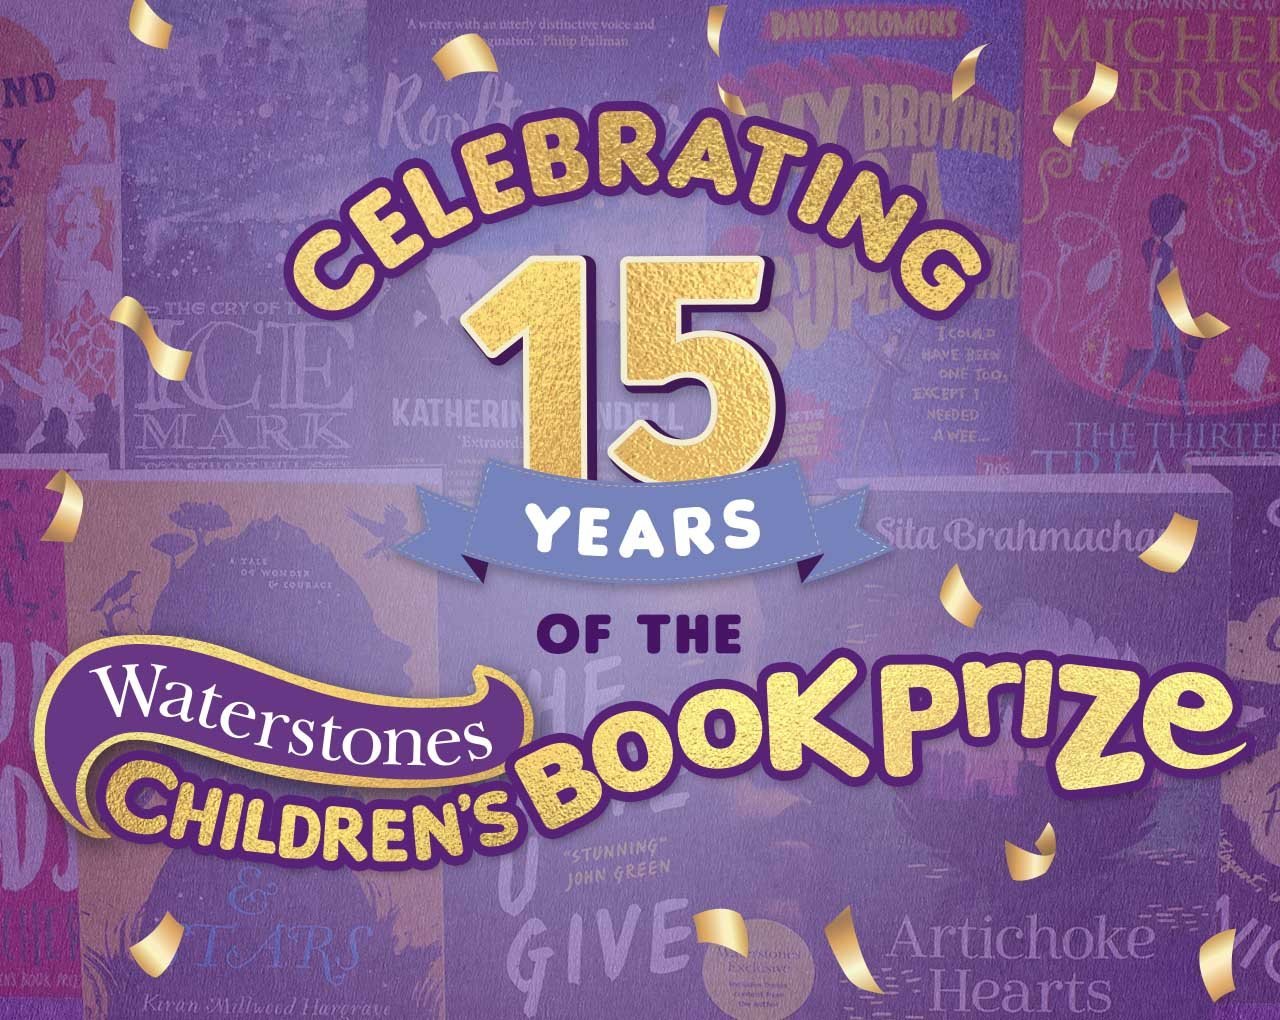 Waterstones Children's Book Prize Waterstones